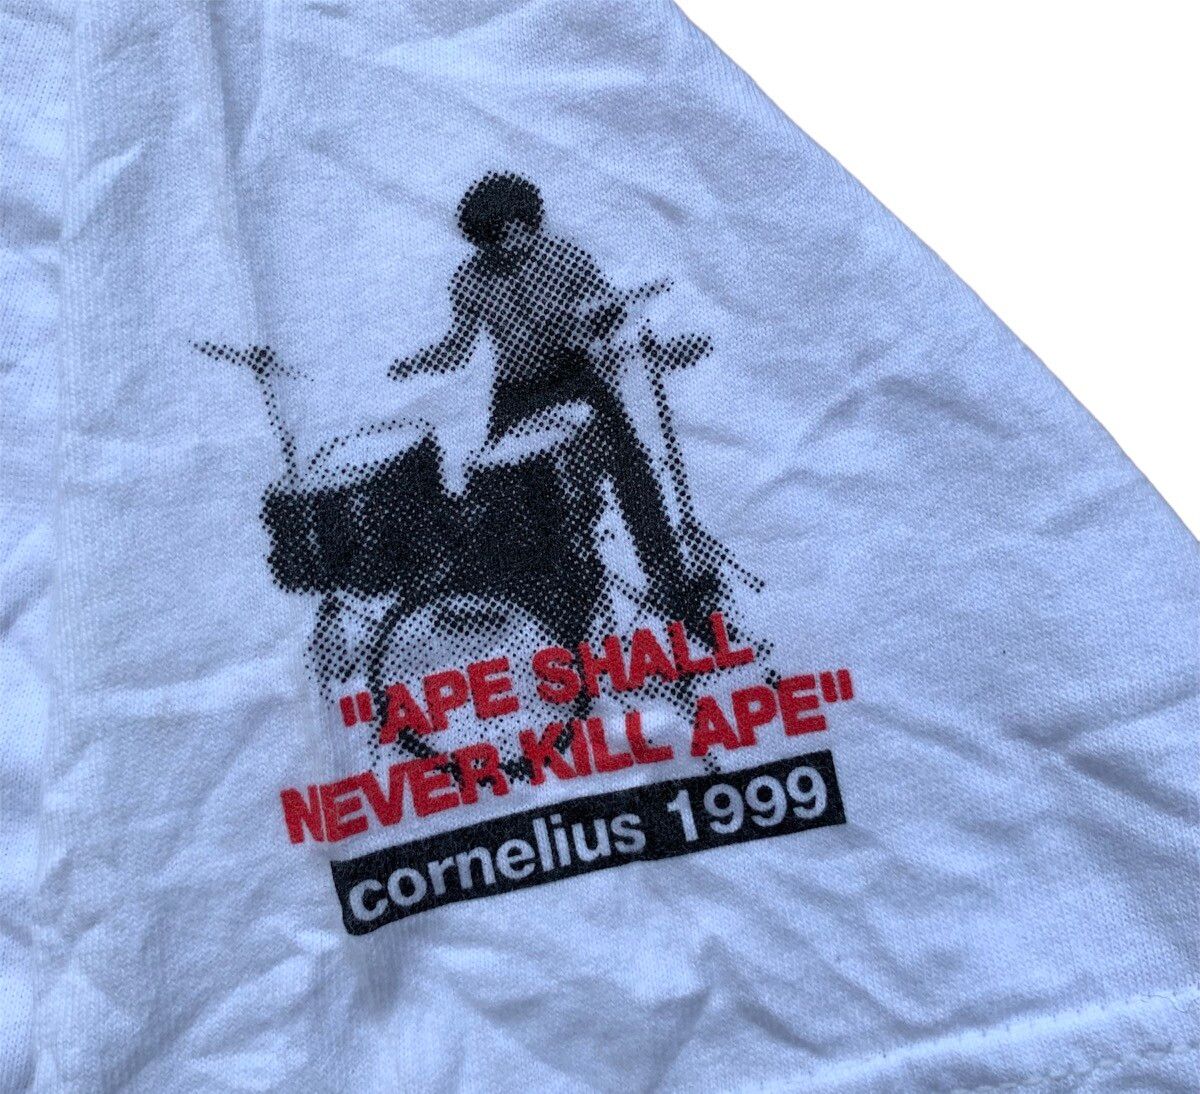 Bape 90’s Ape Shall Never Kill Ape Cornelius Tour 1999 Tshirt Size US M / EU 48-50 / 2 - 3 Thumbnail